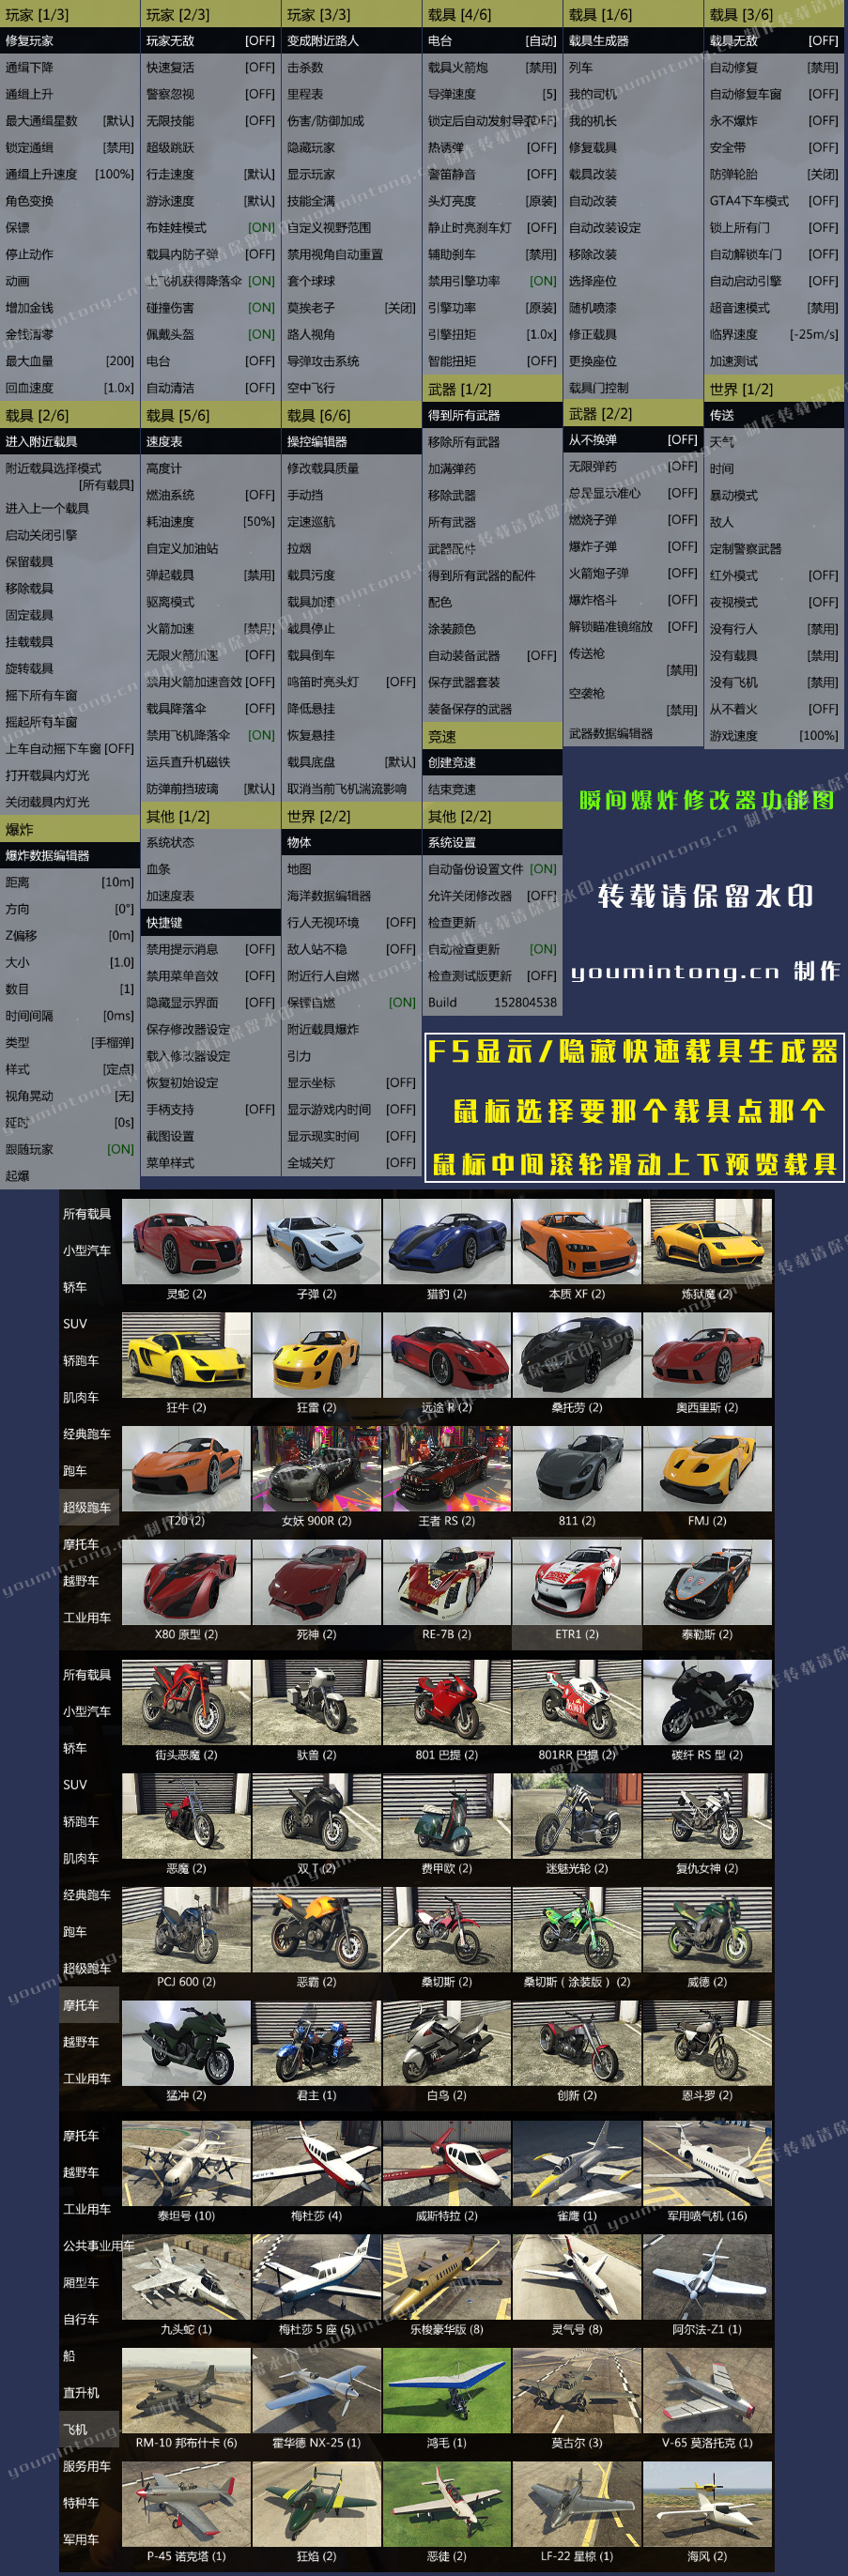 《侠盗猎车手5》GTA5瞬间爆炸修改器 v1.63 中文英文繁体三合一版本 小白一键启动版 下载